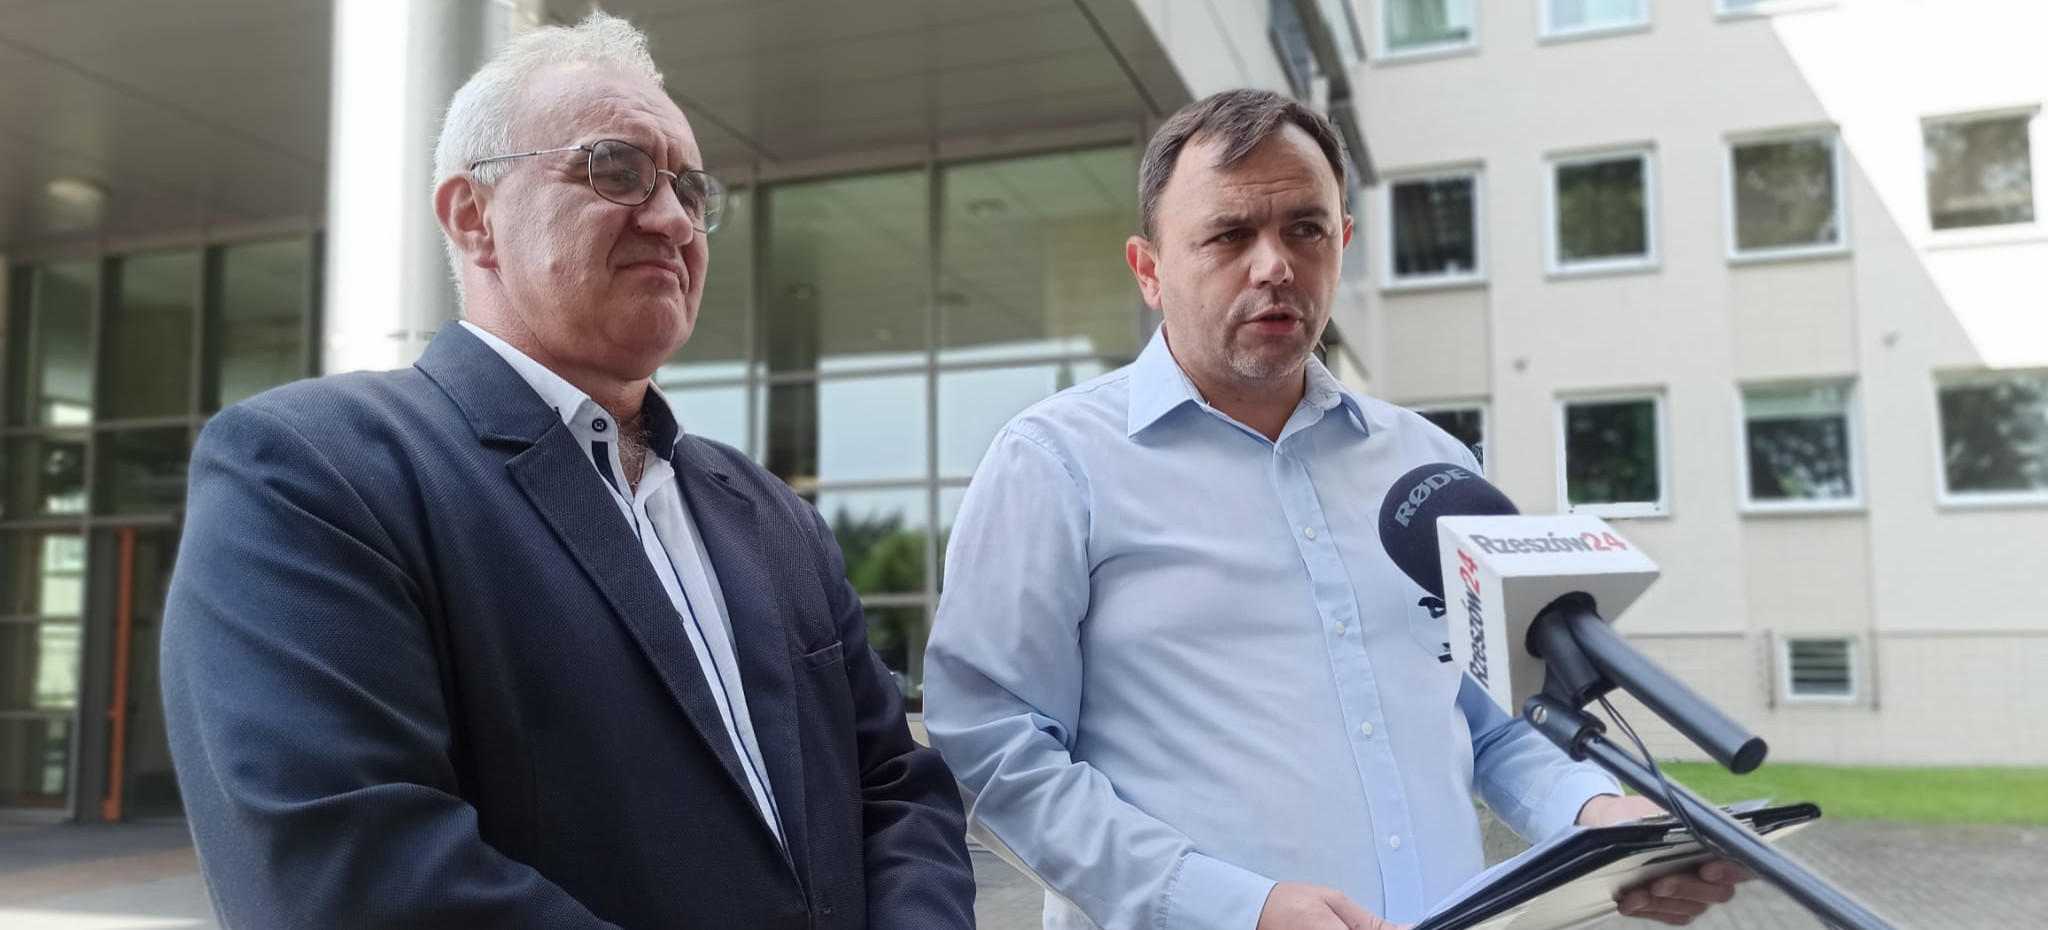 Prokuratura zbada czy podczas 61. Sesji Sejmiku Województwa Podkarpackiego przewodniczący złamał prawo! (VIDEO)